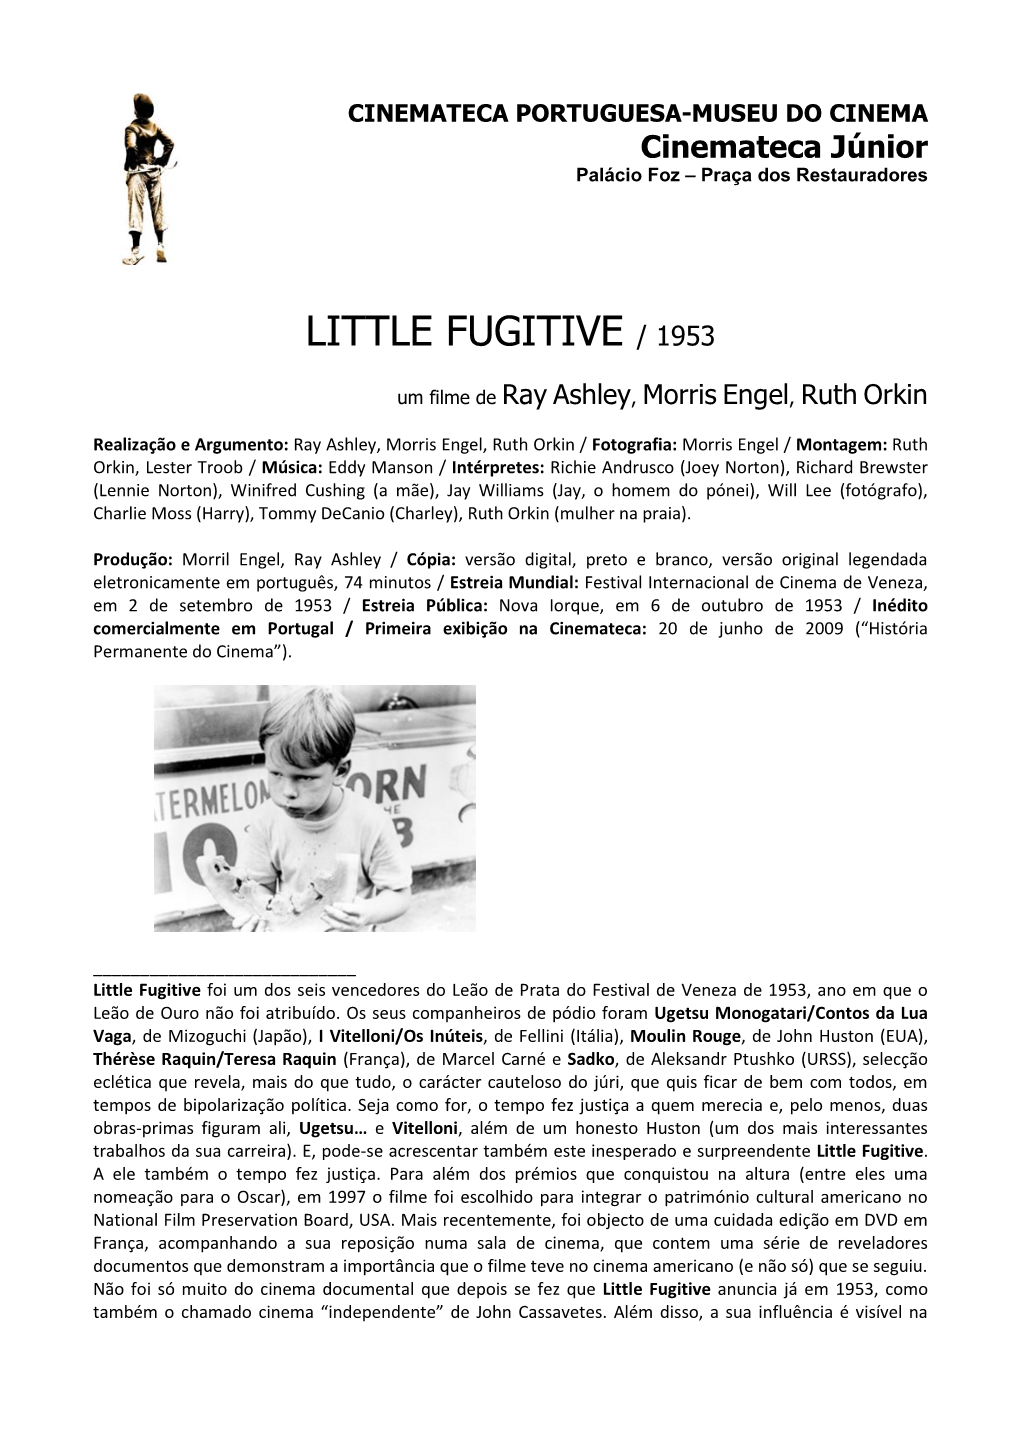 Little Fugitive / 1953